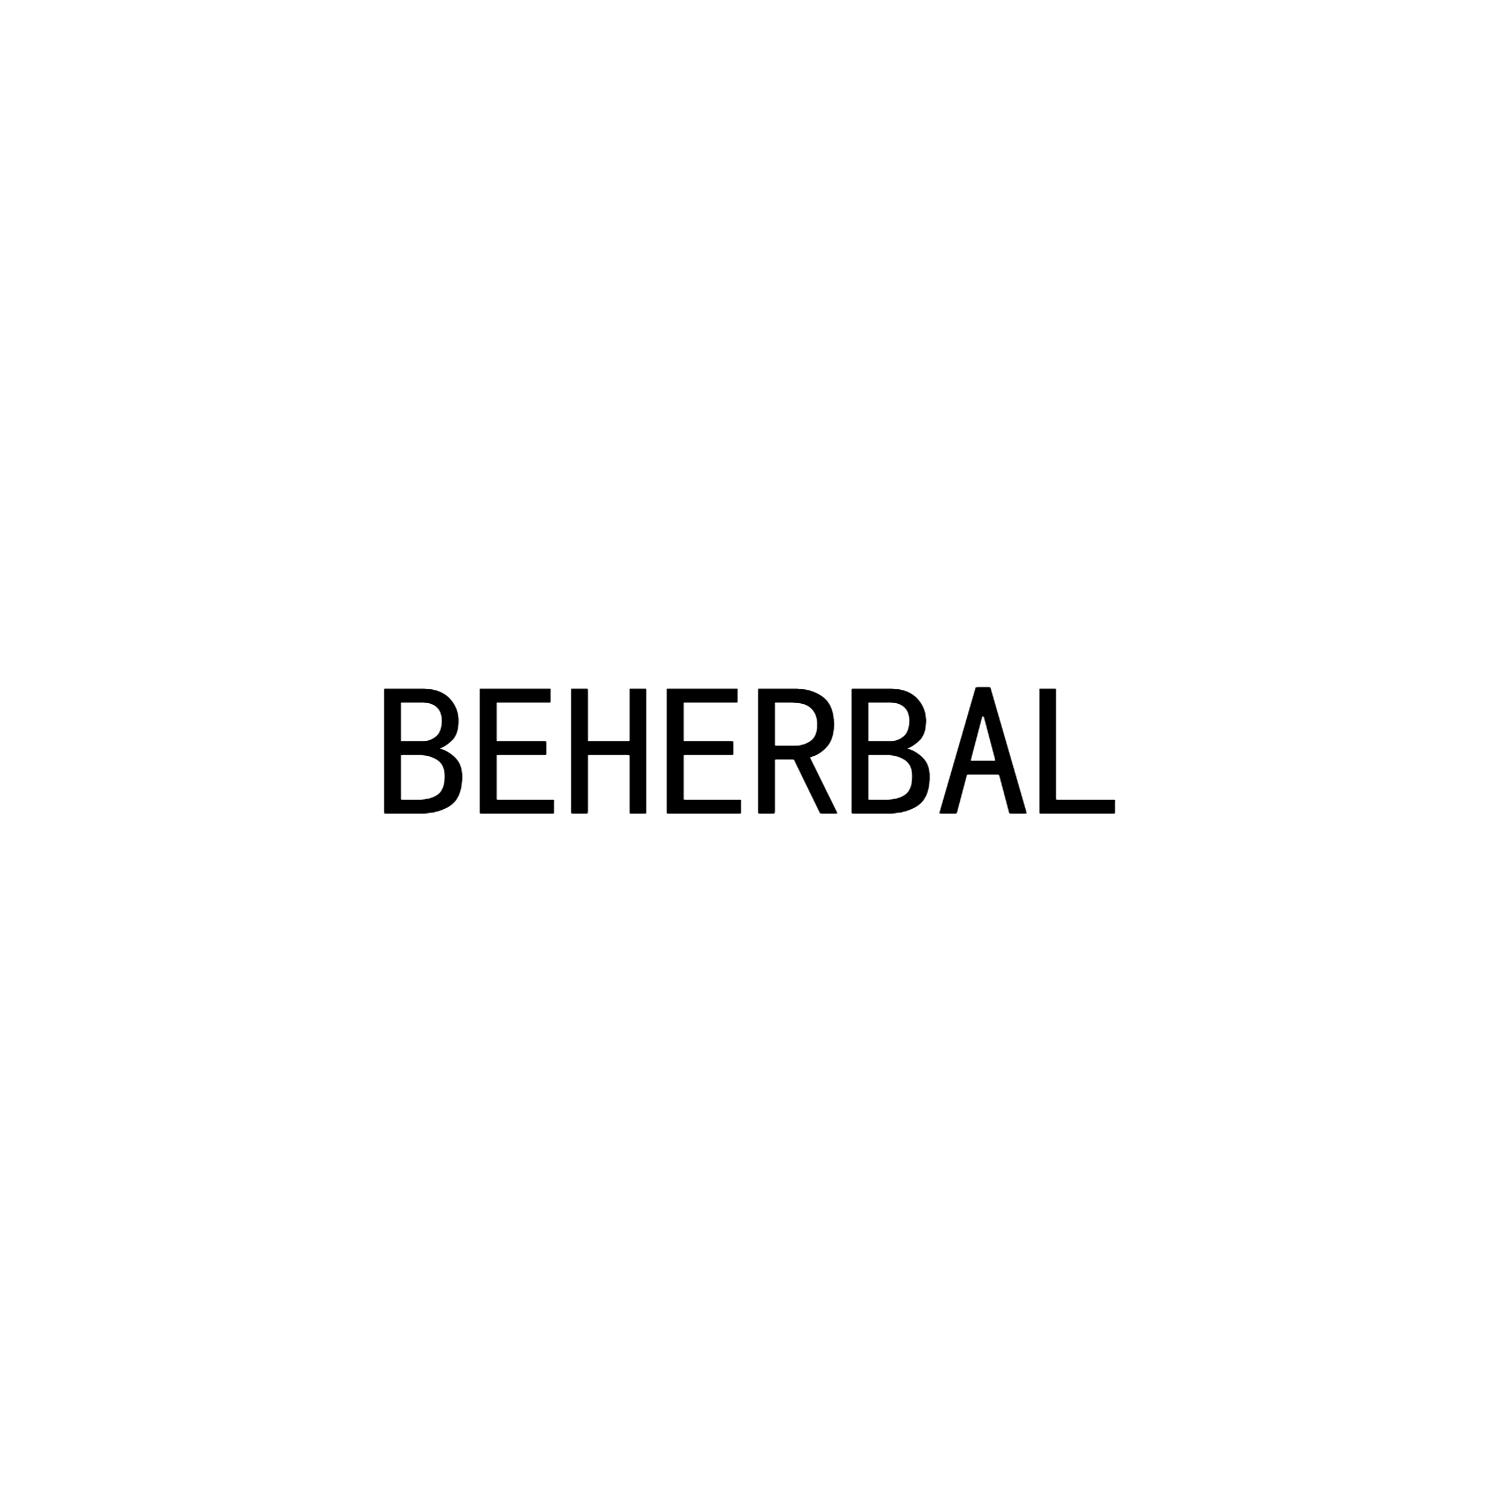 BEHERBAL